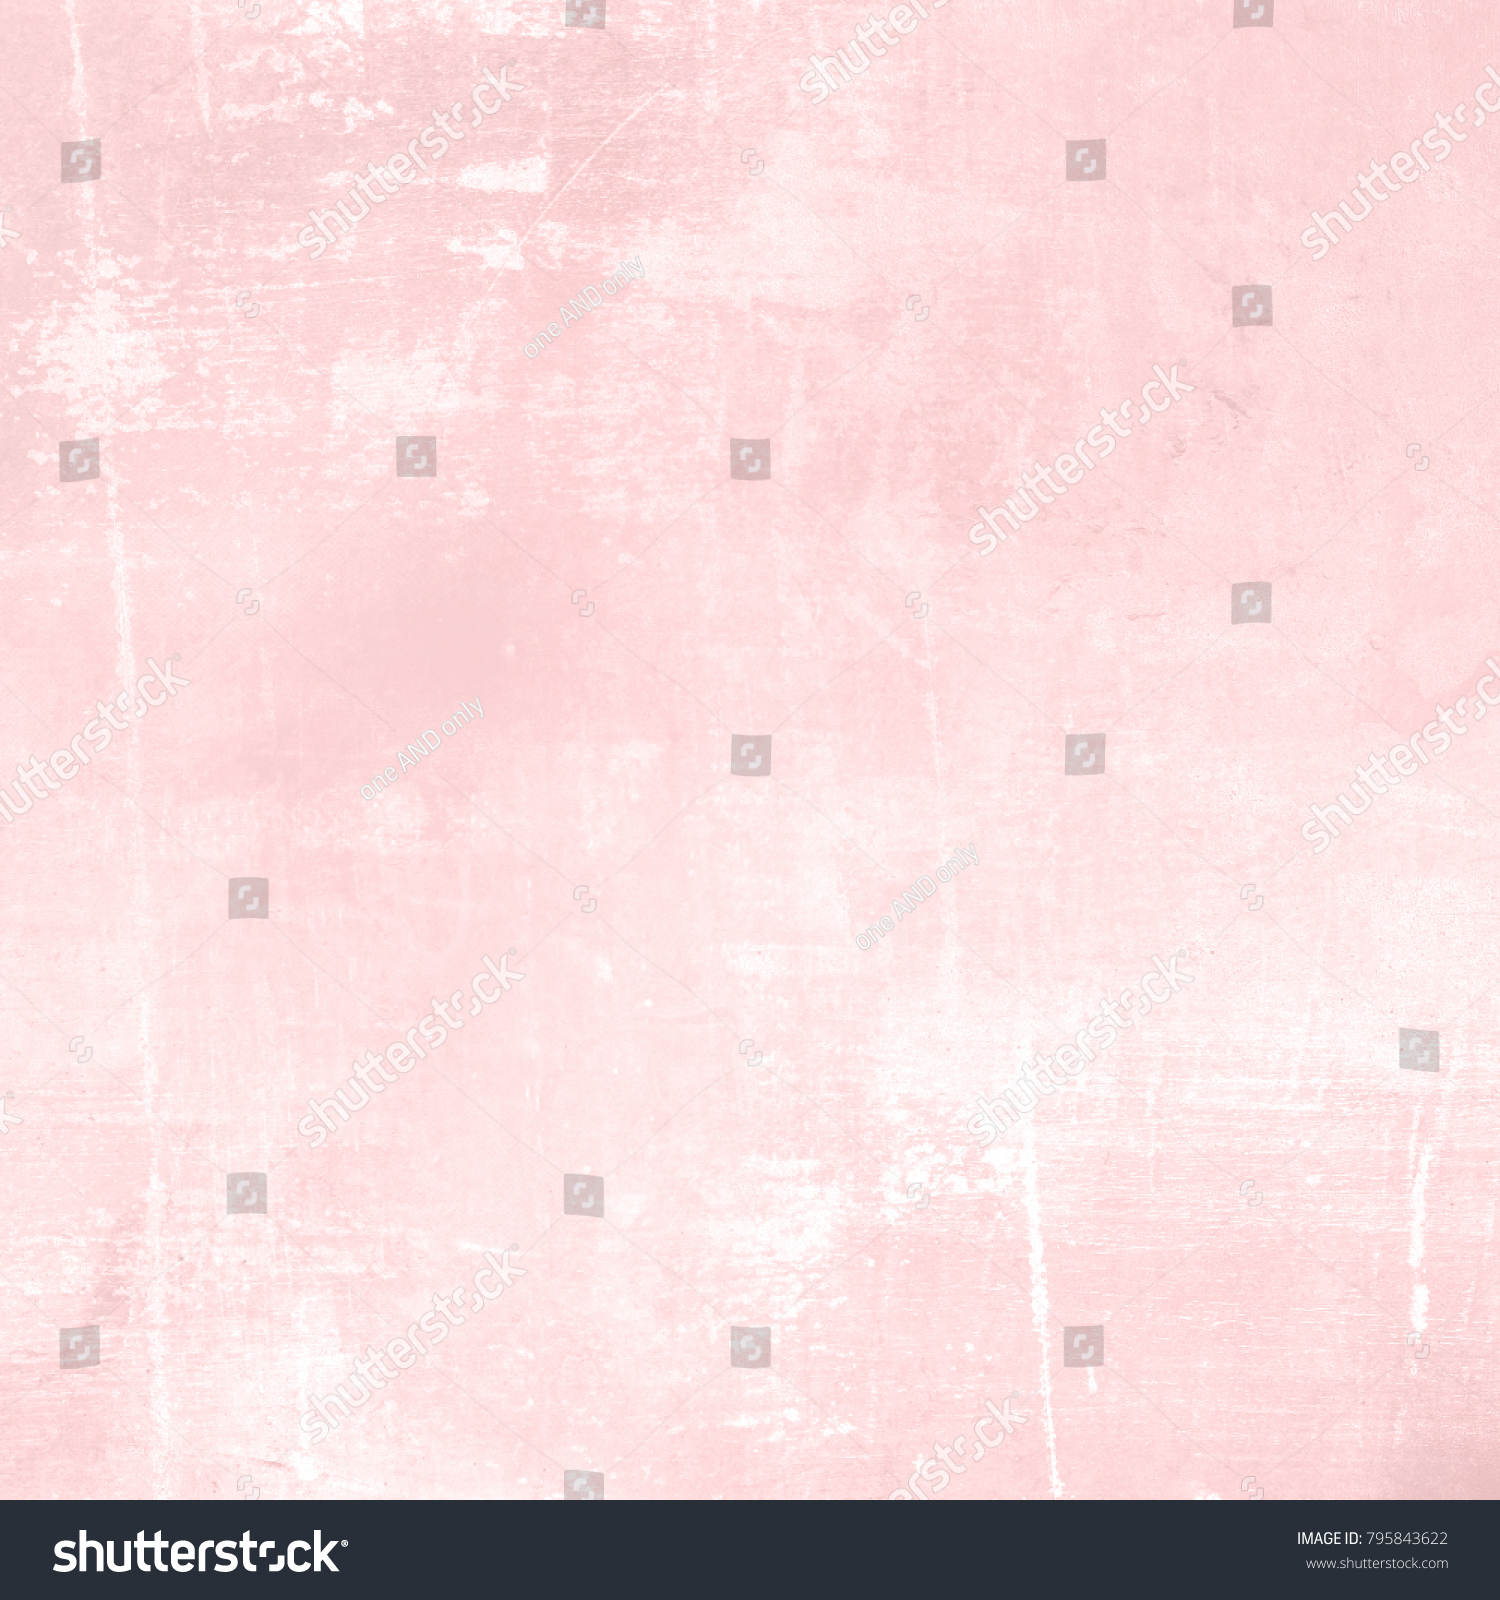 薄いピンクの背景 抽象的な柔らかいパステルの水彩テクスチャー のイラスト素材